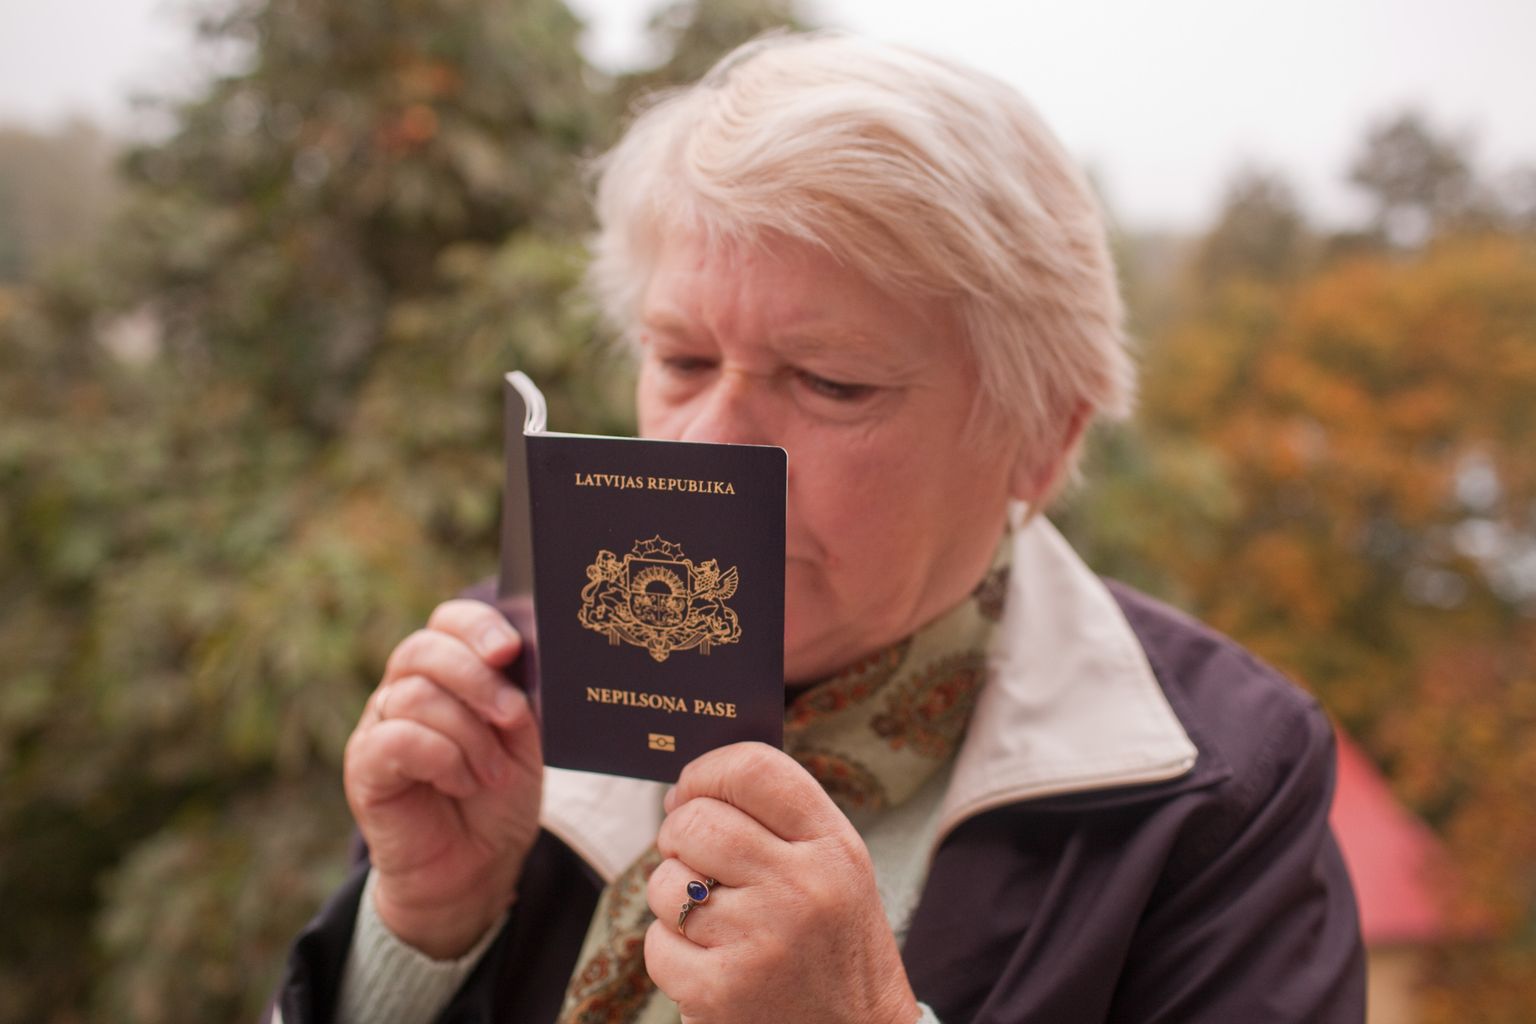 Паспорт негражданина Латвии, выдаваемый лицам, не являющимся гражданами республики или какой-либо другой страны.